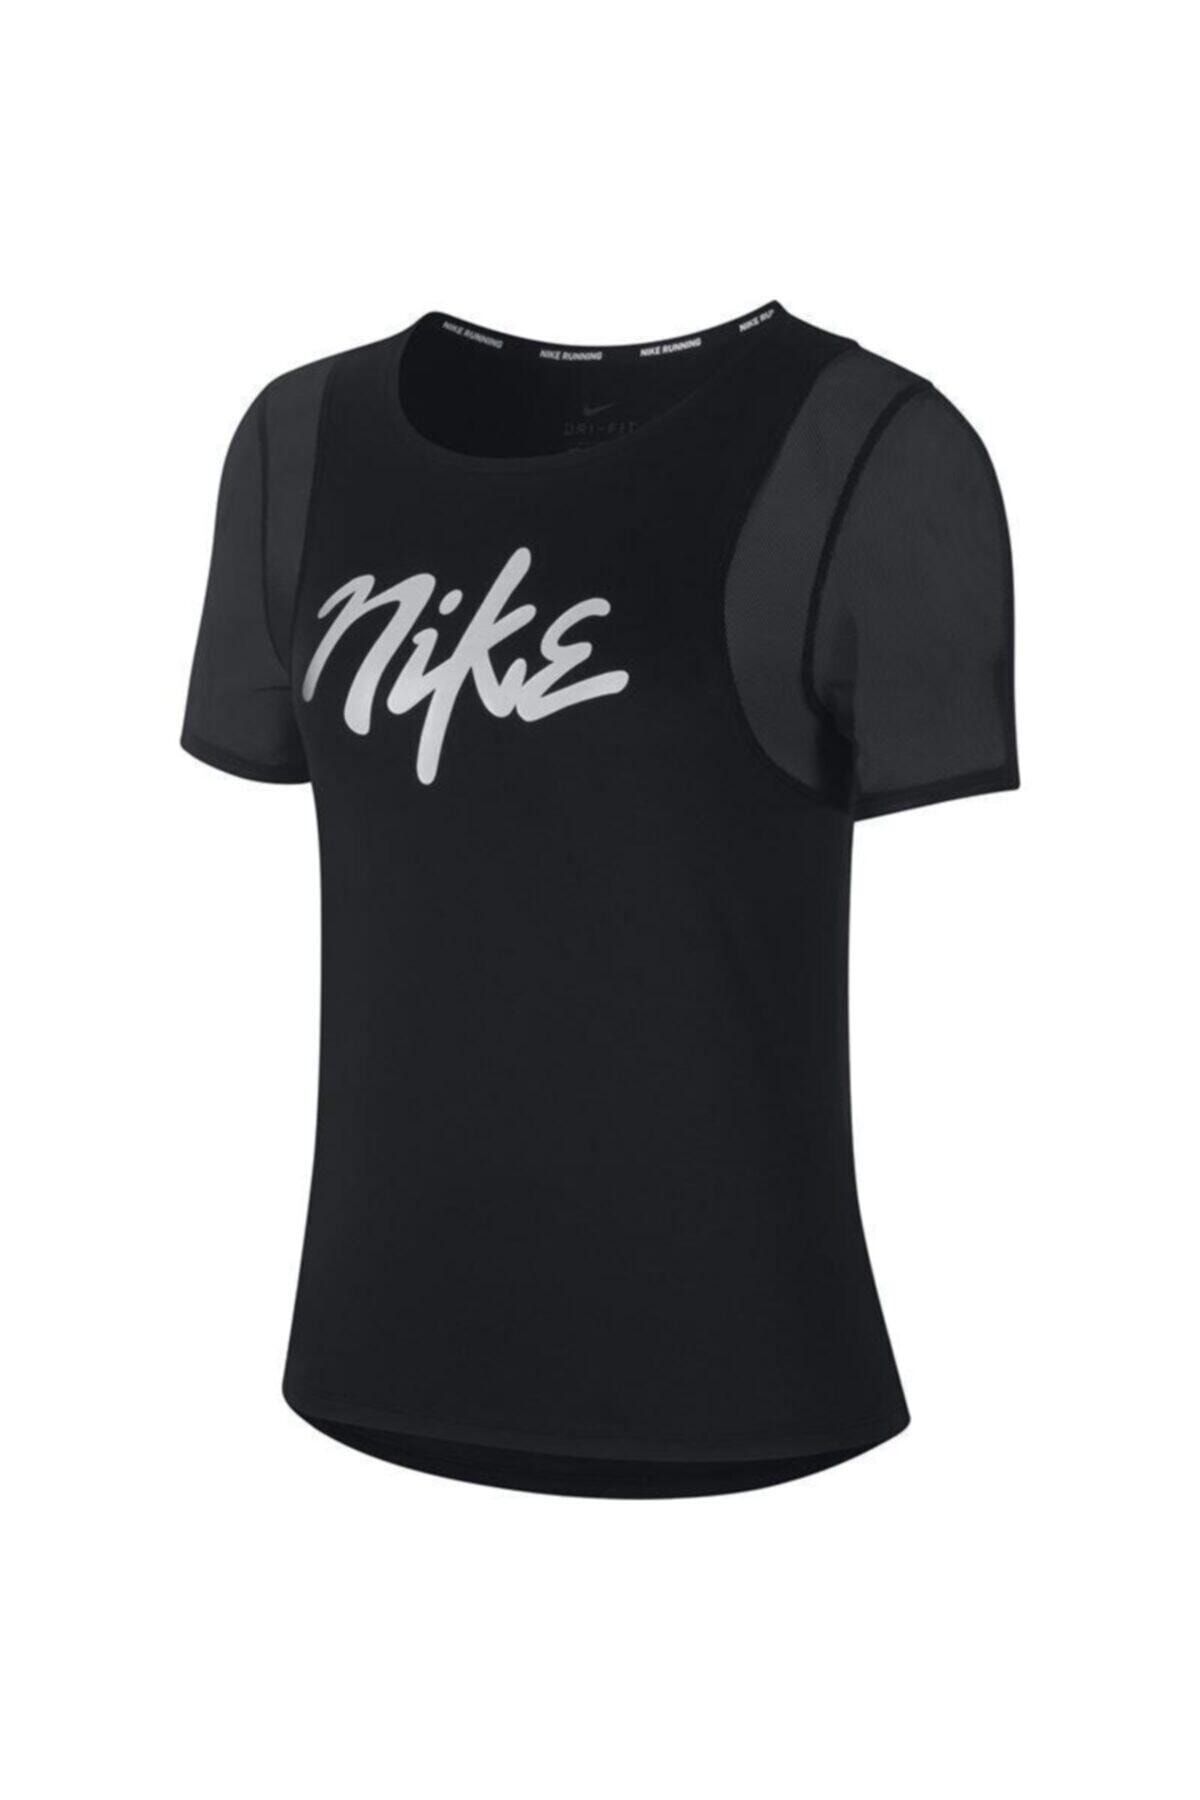 Nike Kadın T-shirt Cj2185-010